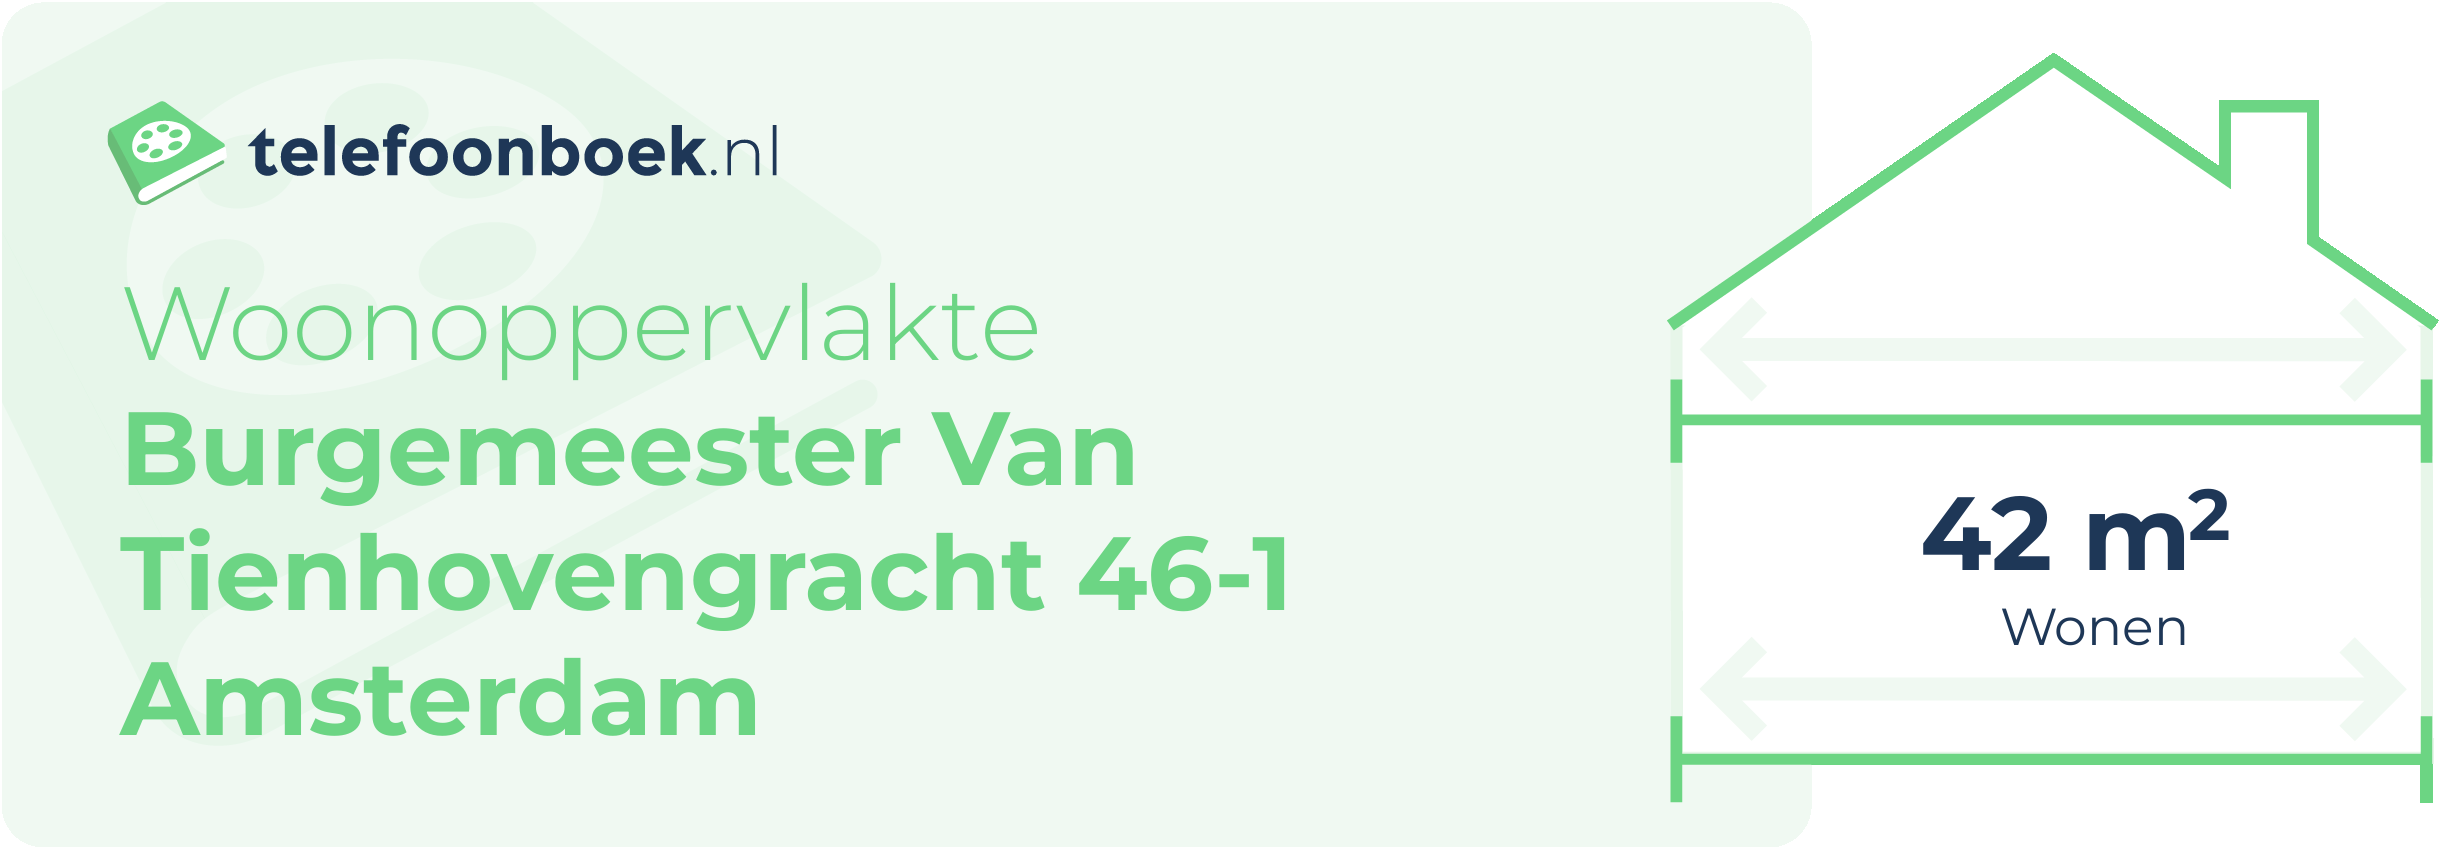 Woonoppervlakte Burgemeester Van Tienhovengracht 46-1 Amsterdam